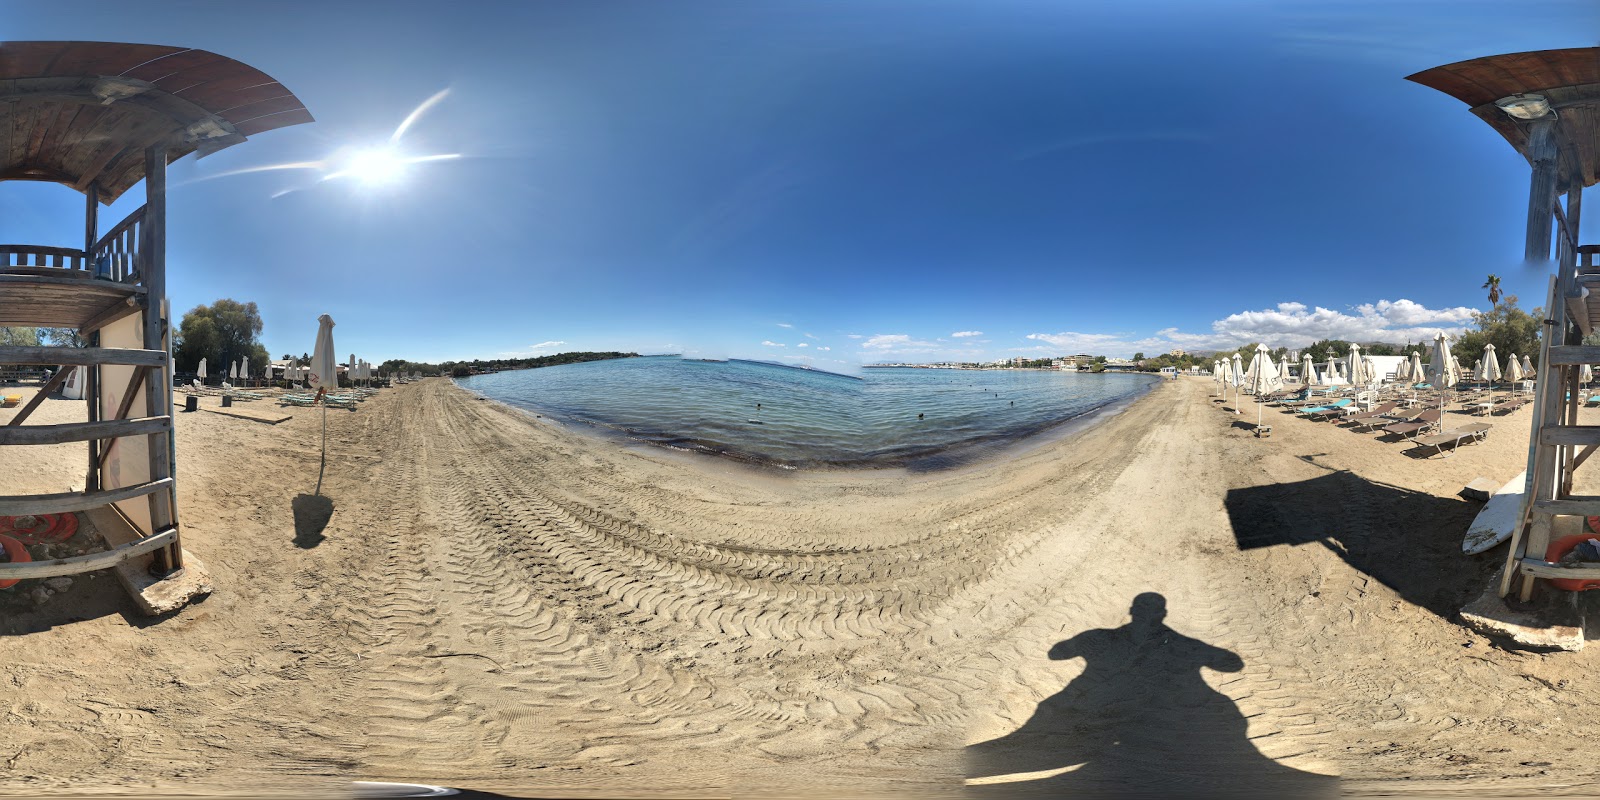 Fotografie cu Astera cu o suprafață de nisip maro